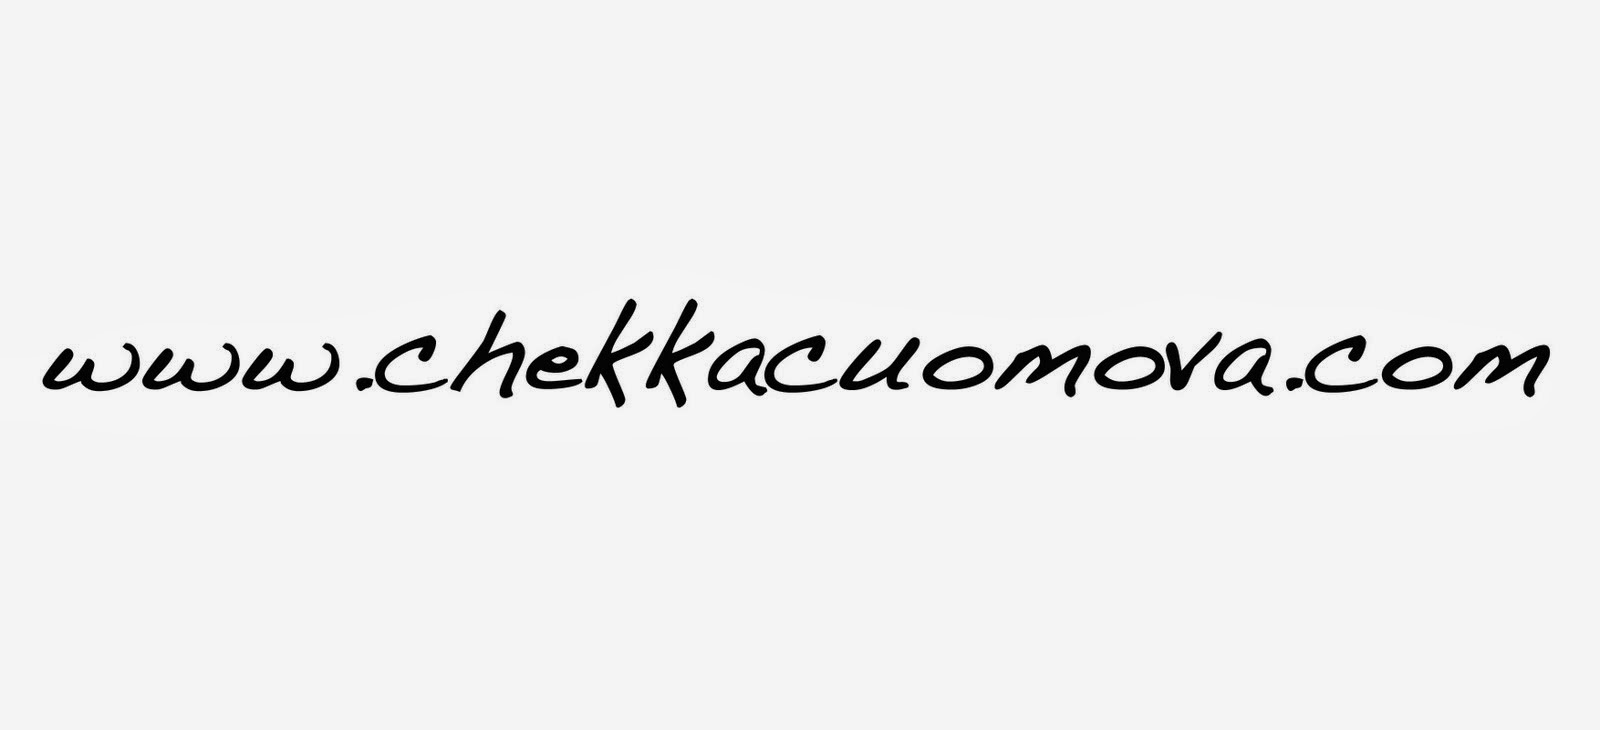 www.chekkacuomova.com